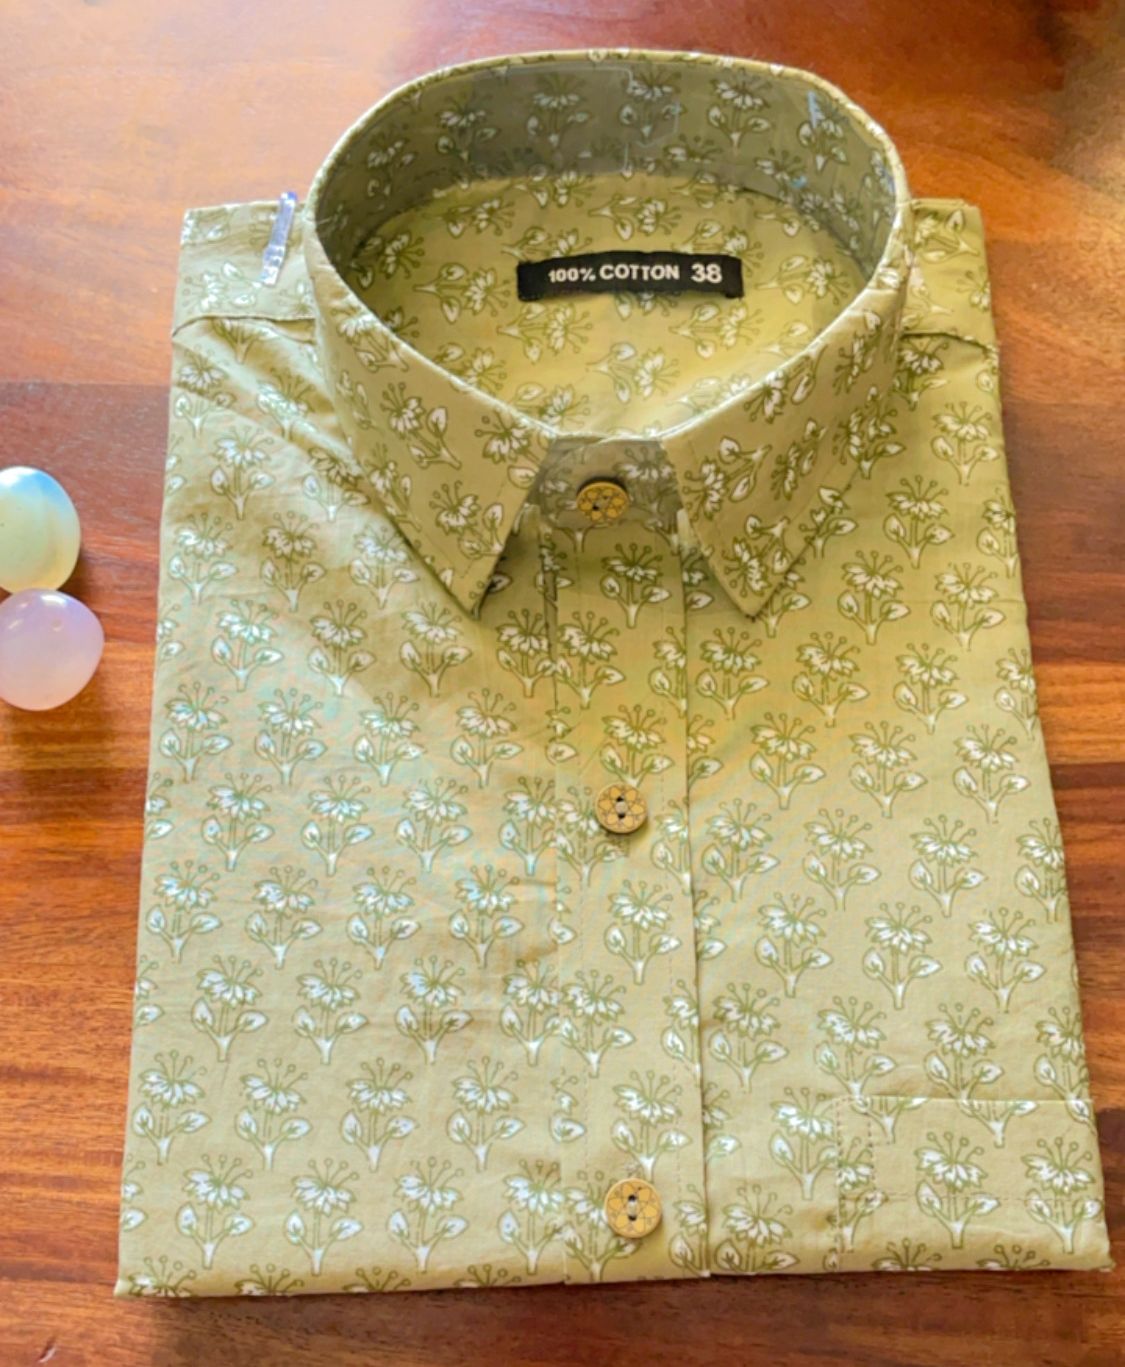 Russian Green Short Sleeve Shirt